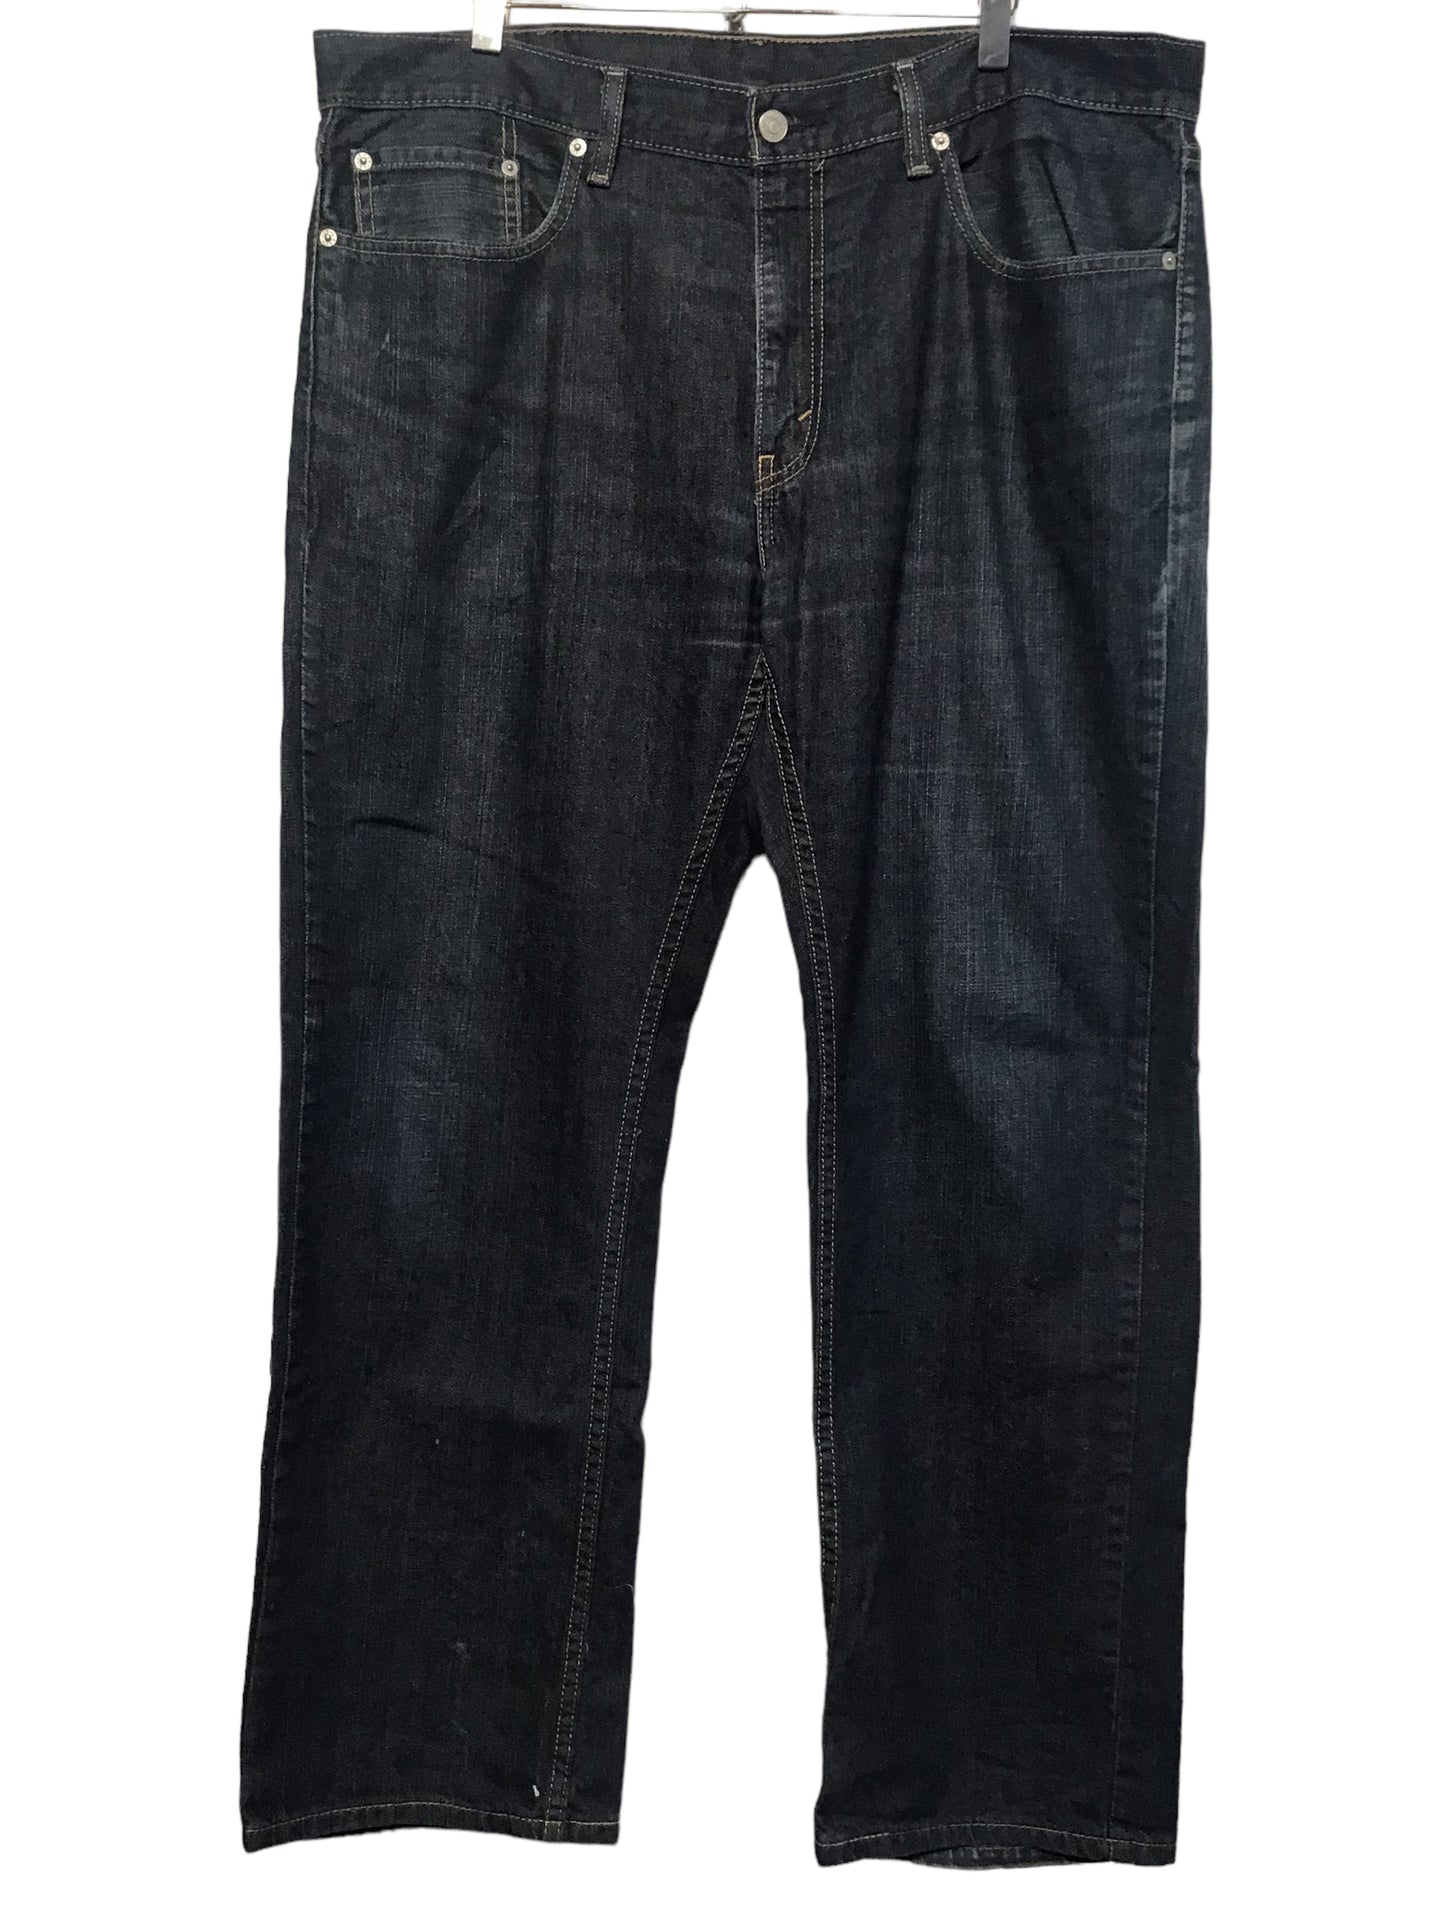 Levi 559 Jeans (38x30)